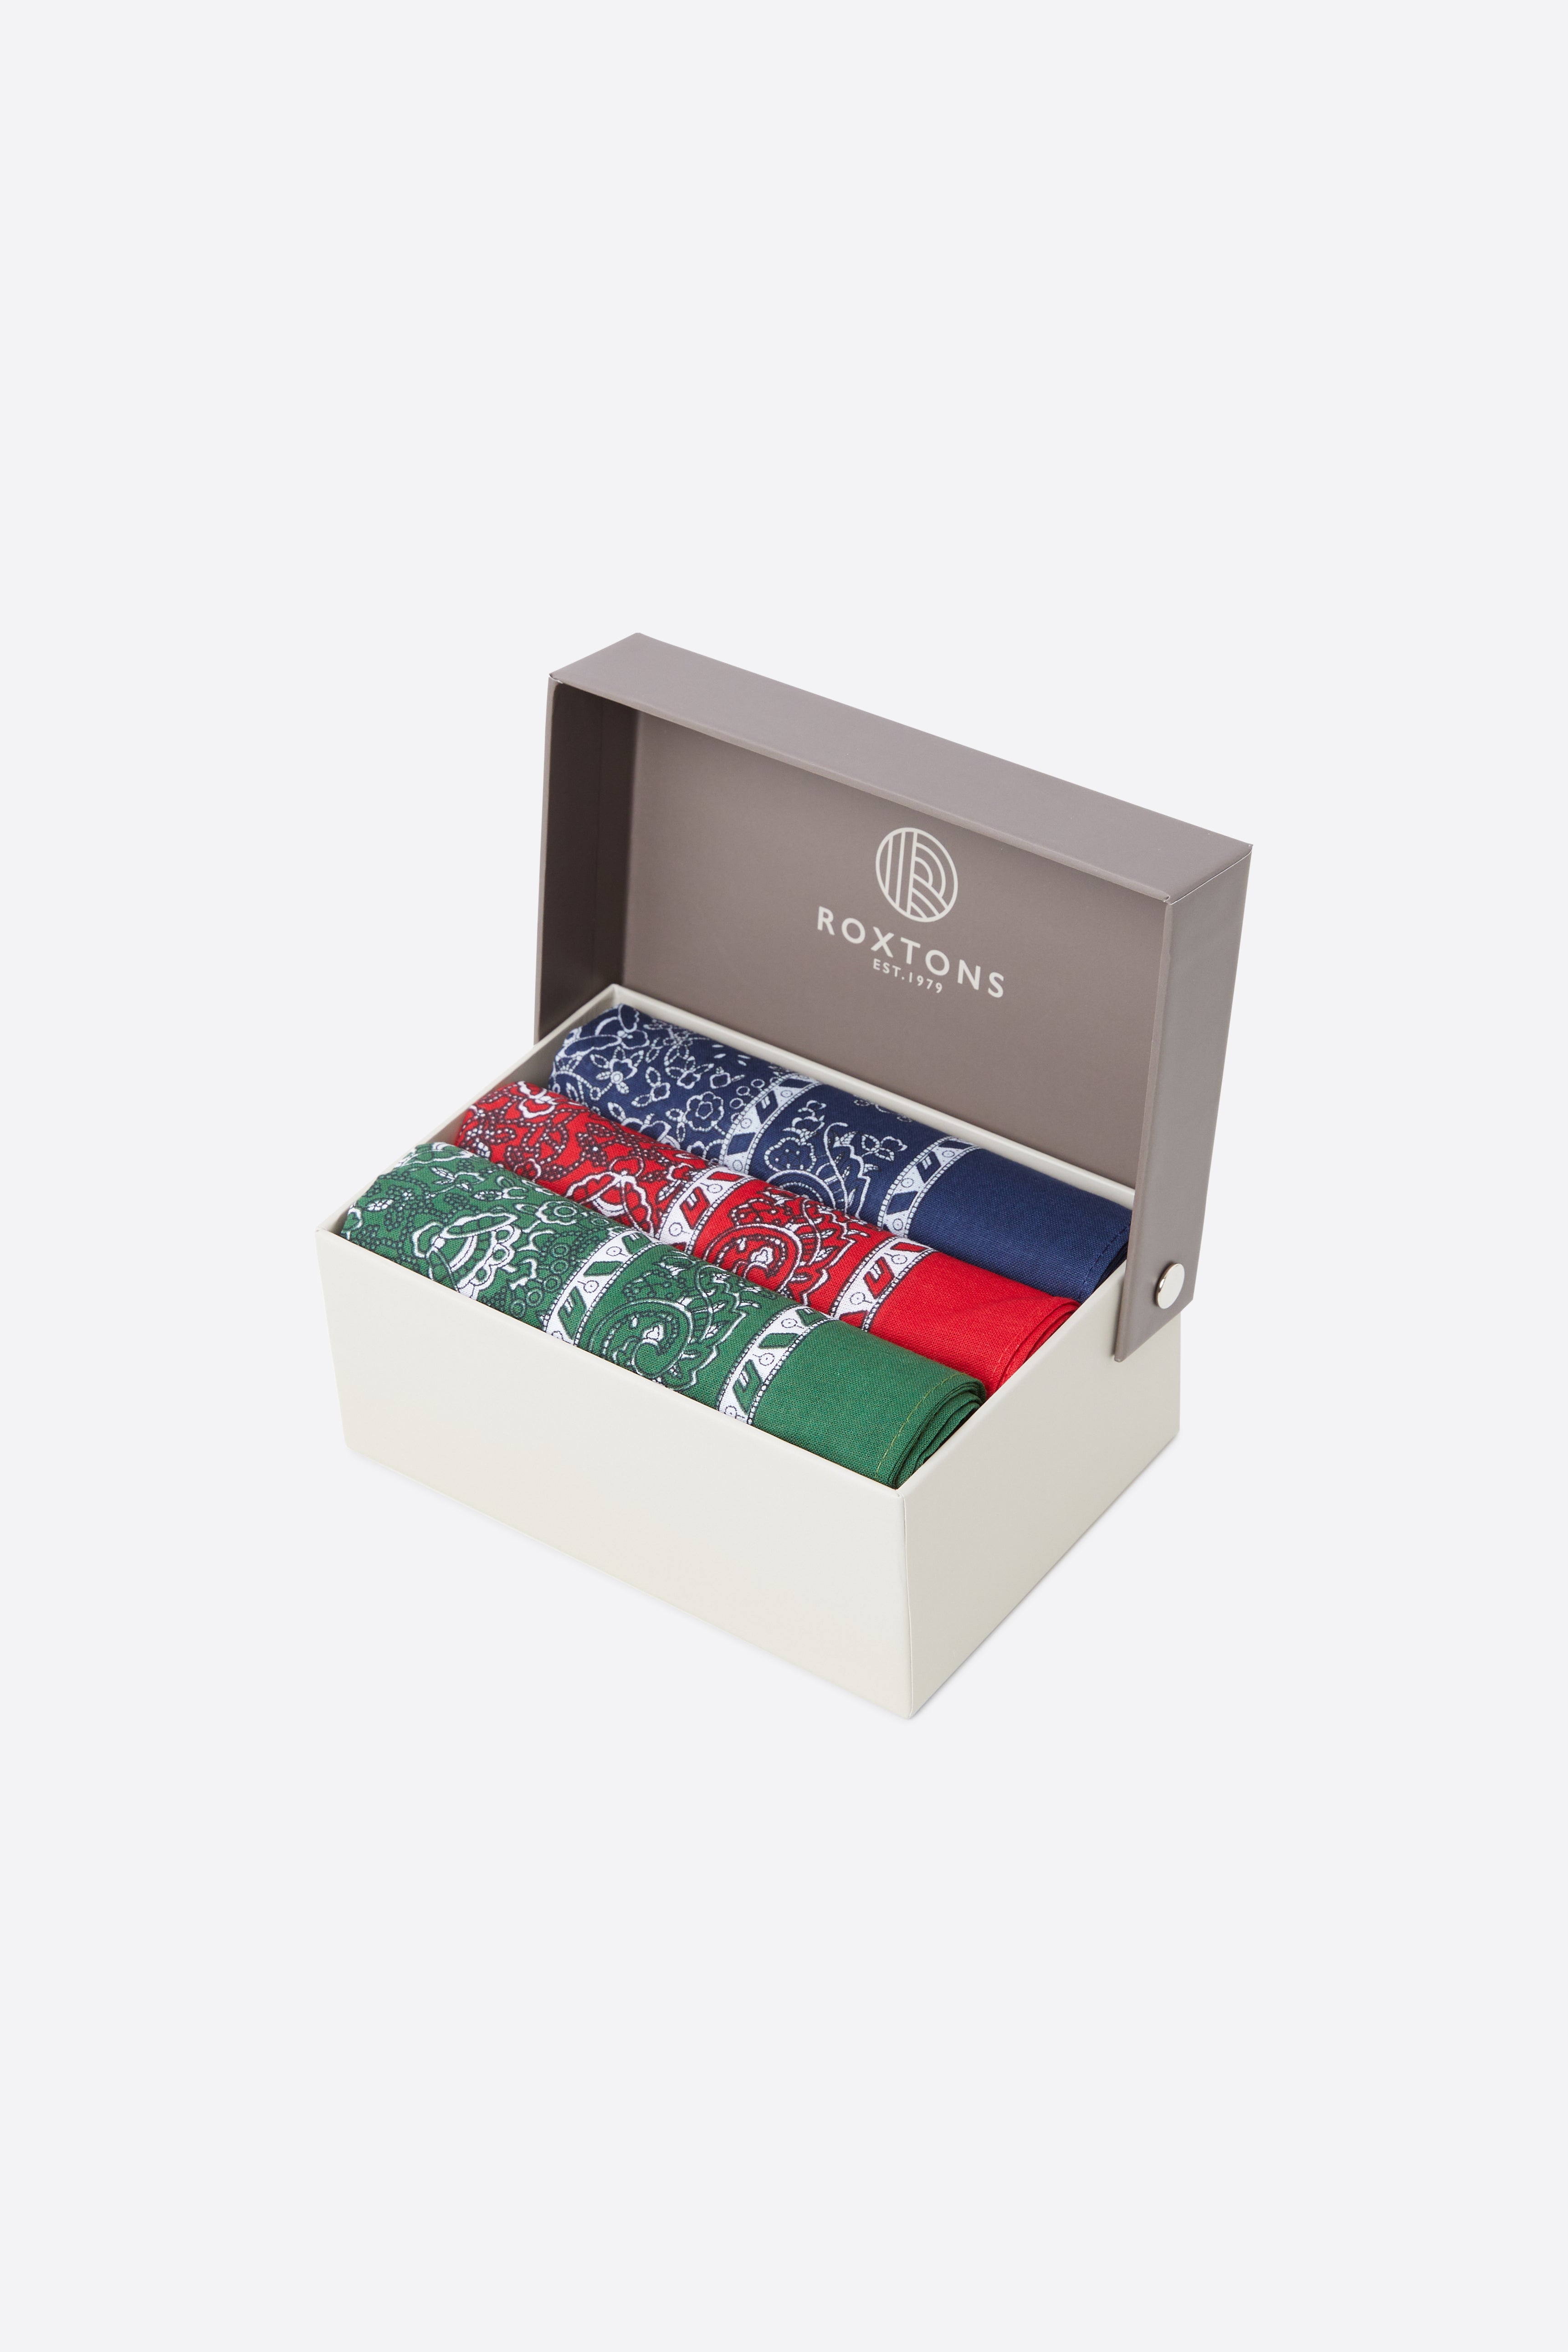 Roxtons - Box of Three Handkerchiefs